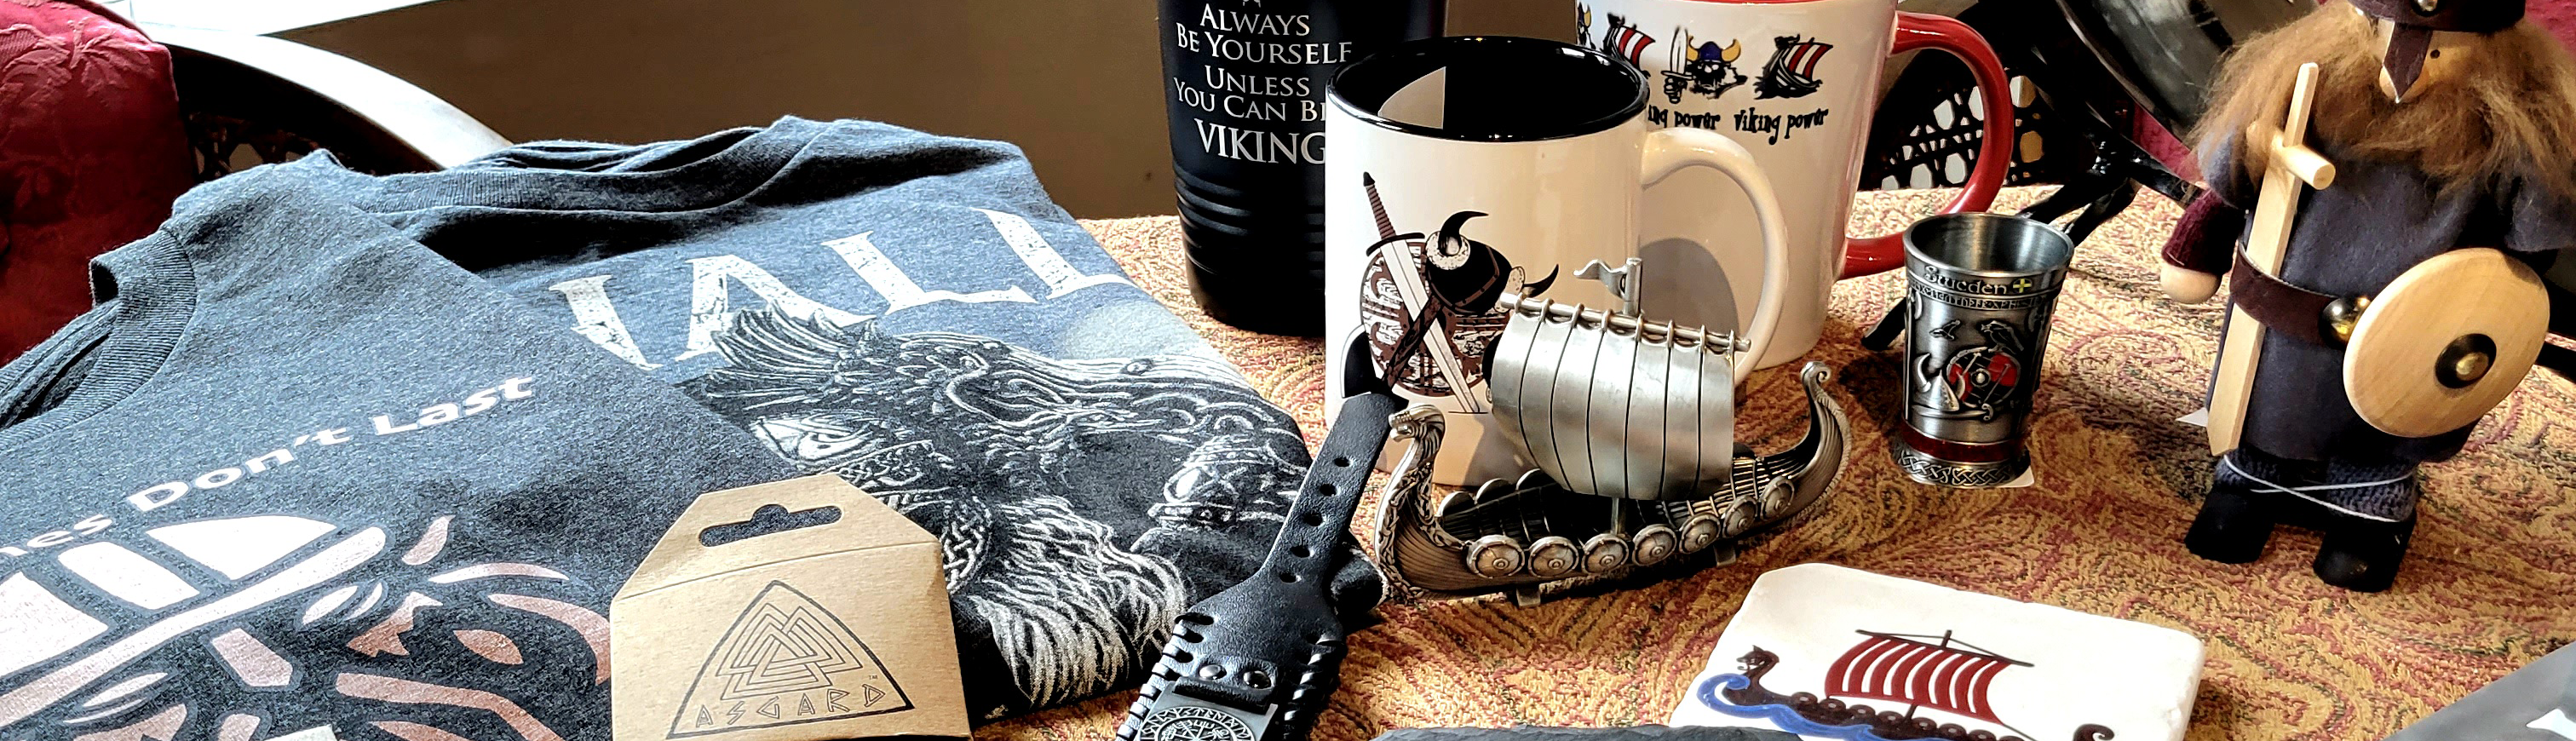 Viking Home & Kitchen